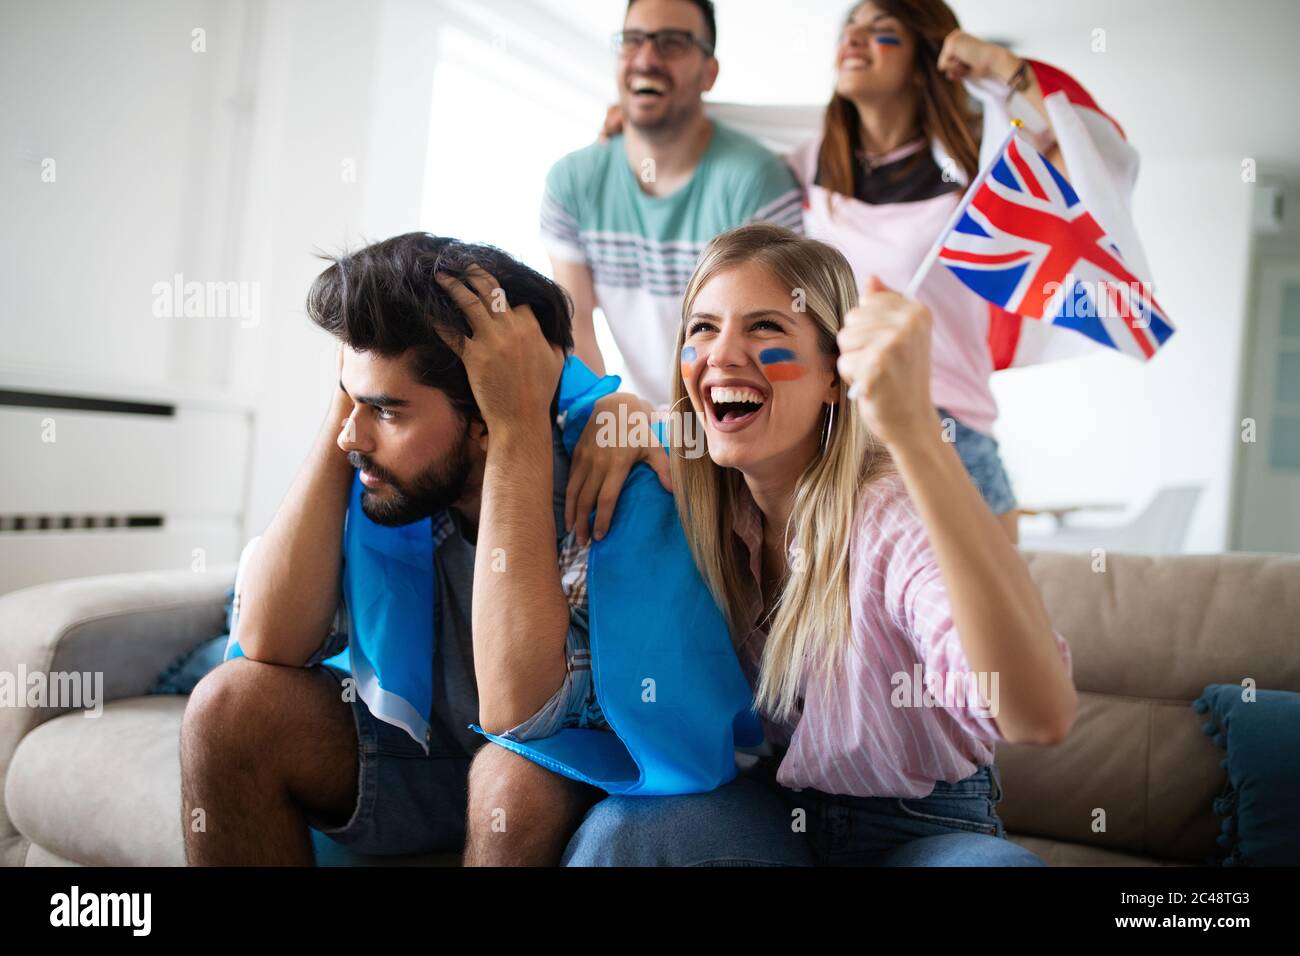 Gruppo di Tifosi delusi e felice di guardare una partita di calcio sul lettino. Foto Stock